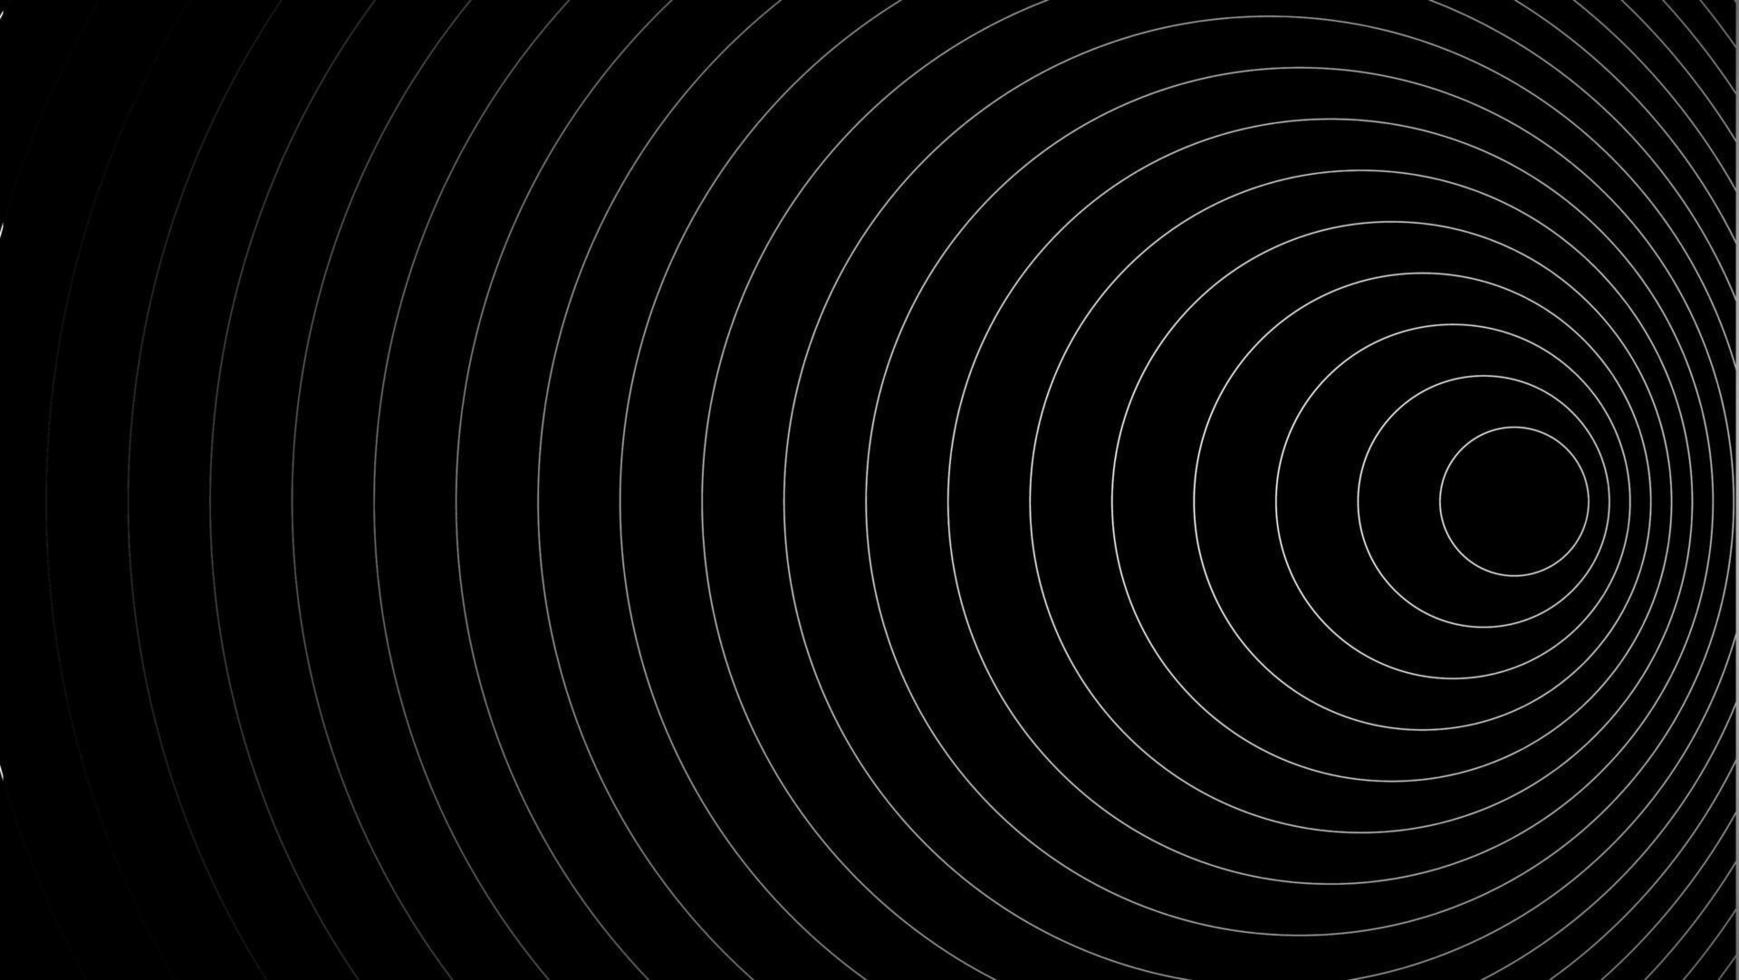 crio uma negrito Veja com uma cêntrico círculo fundo apresentando vetor gráficos do som ondas. a Preto e branco cor anel e fiação círculo alvo adicionar uma moderno tocar.